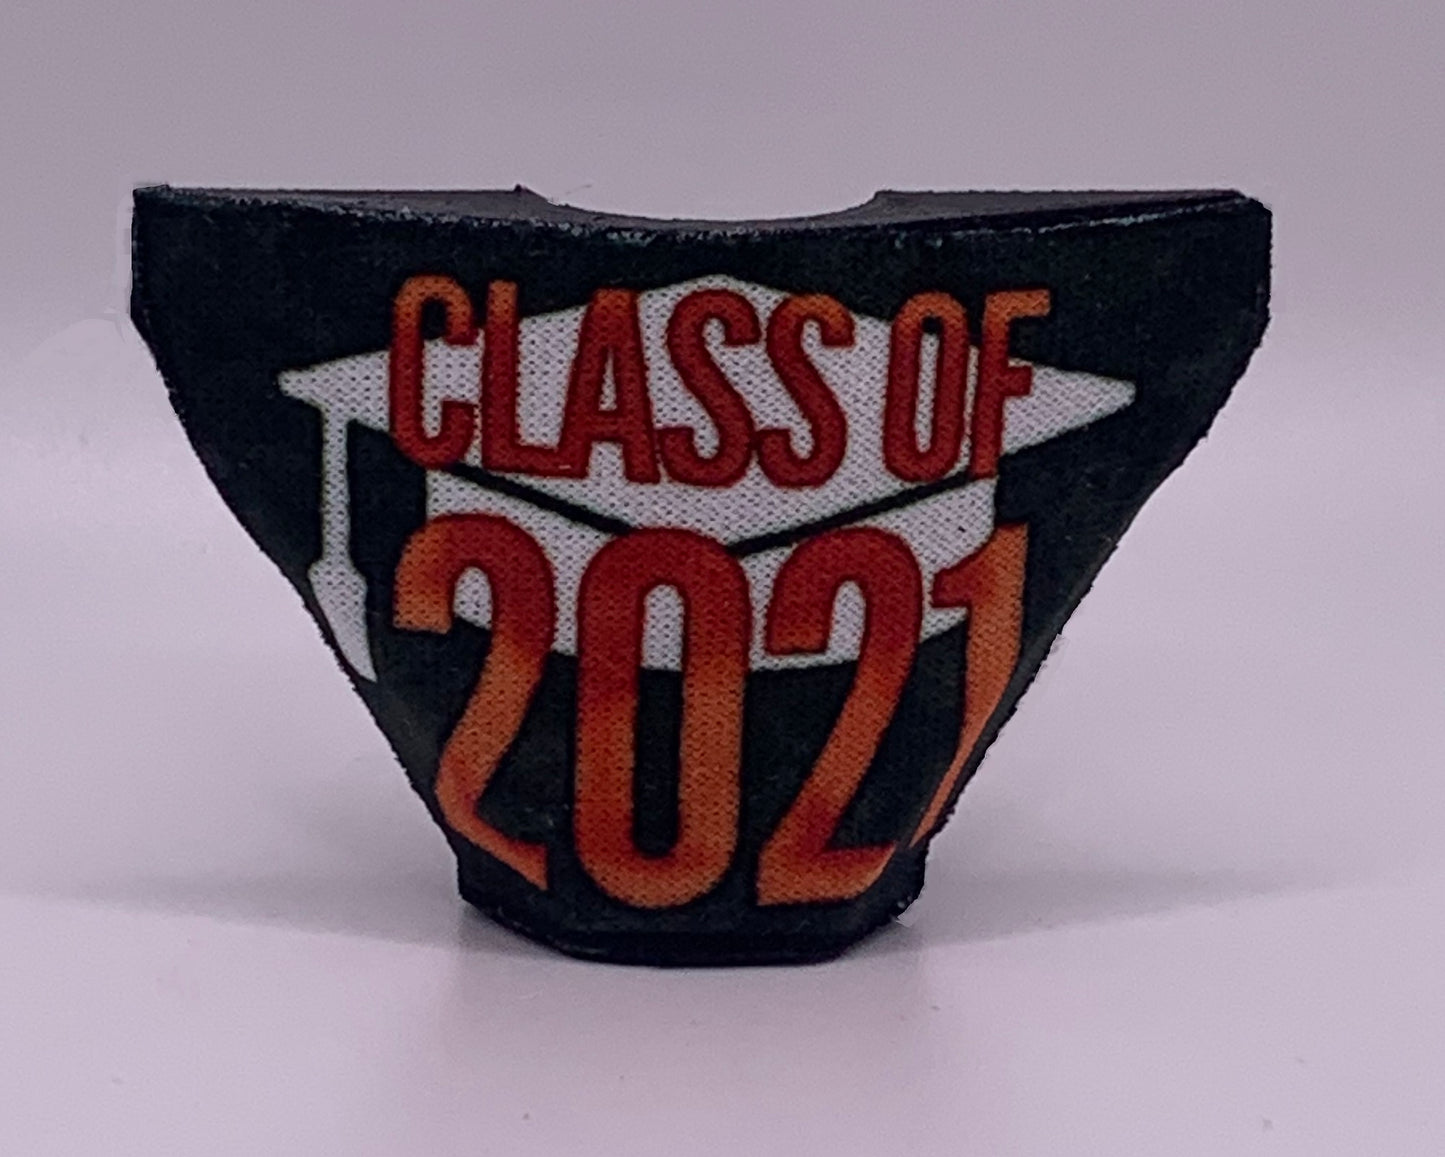 Class of 2022 Necktie Knot